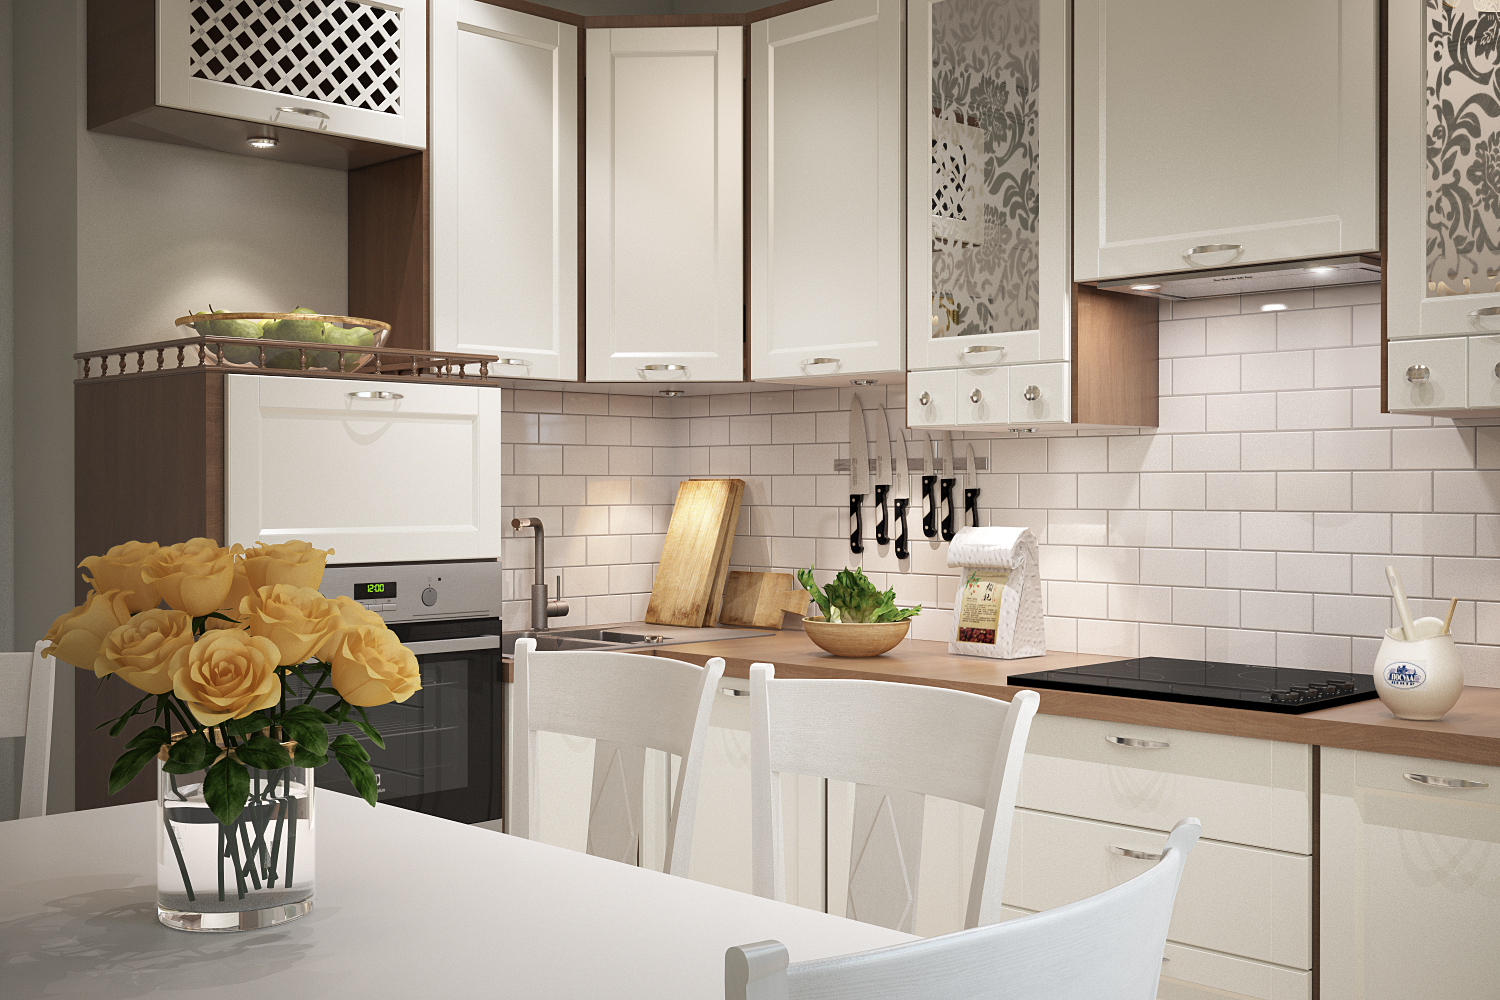 रसोई / रसोईघर 3d max vray 3.0 में प्रस्तुत छवि